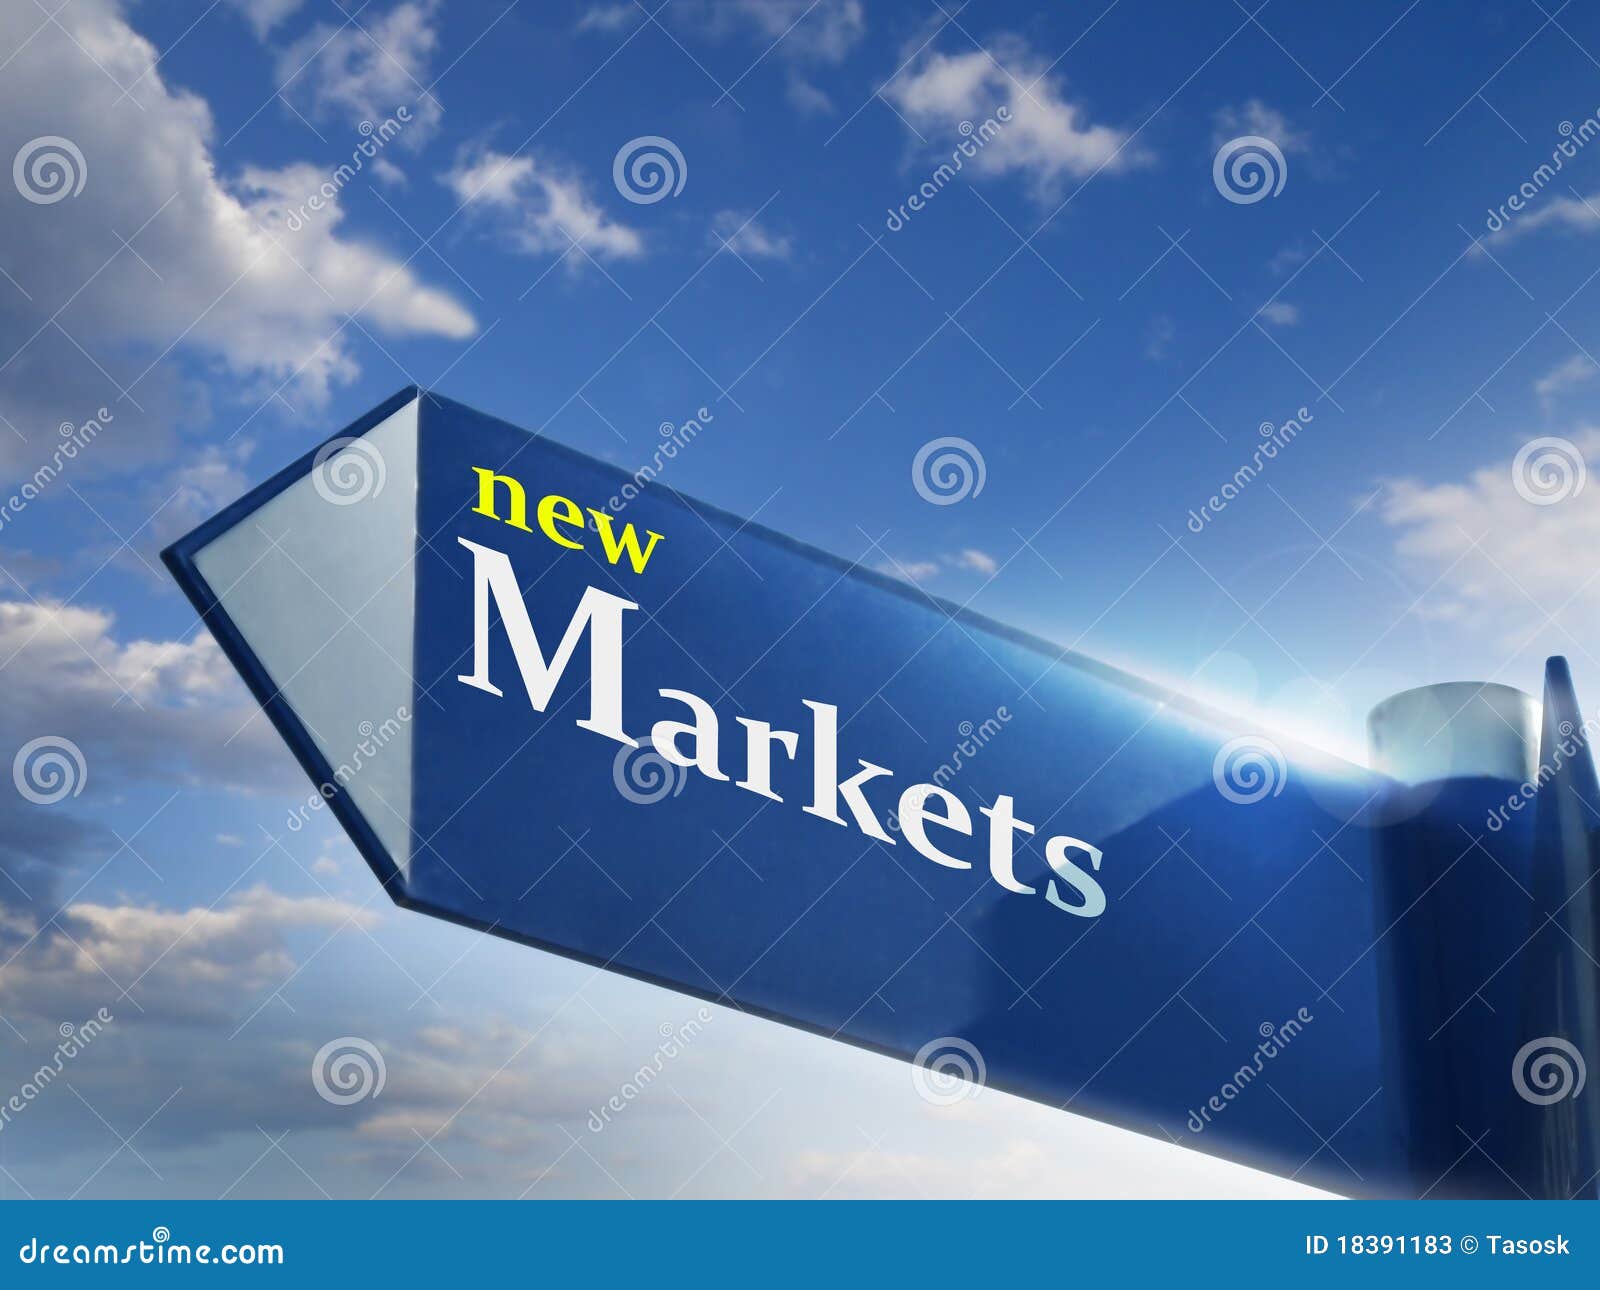 new markets